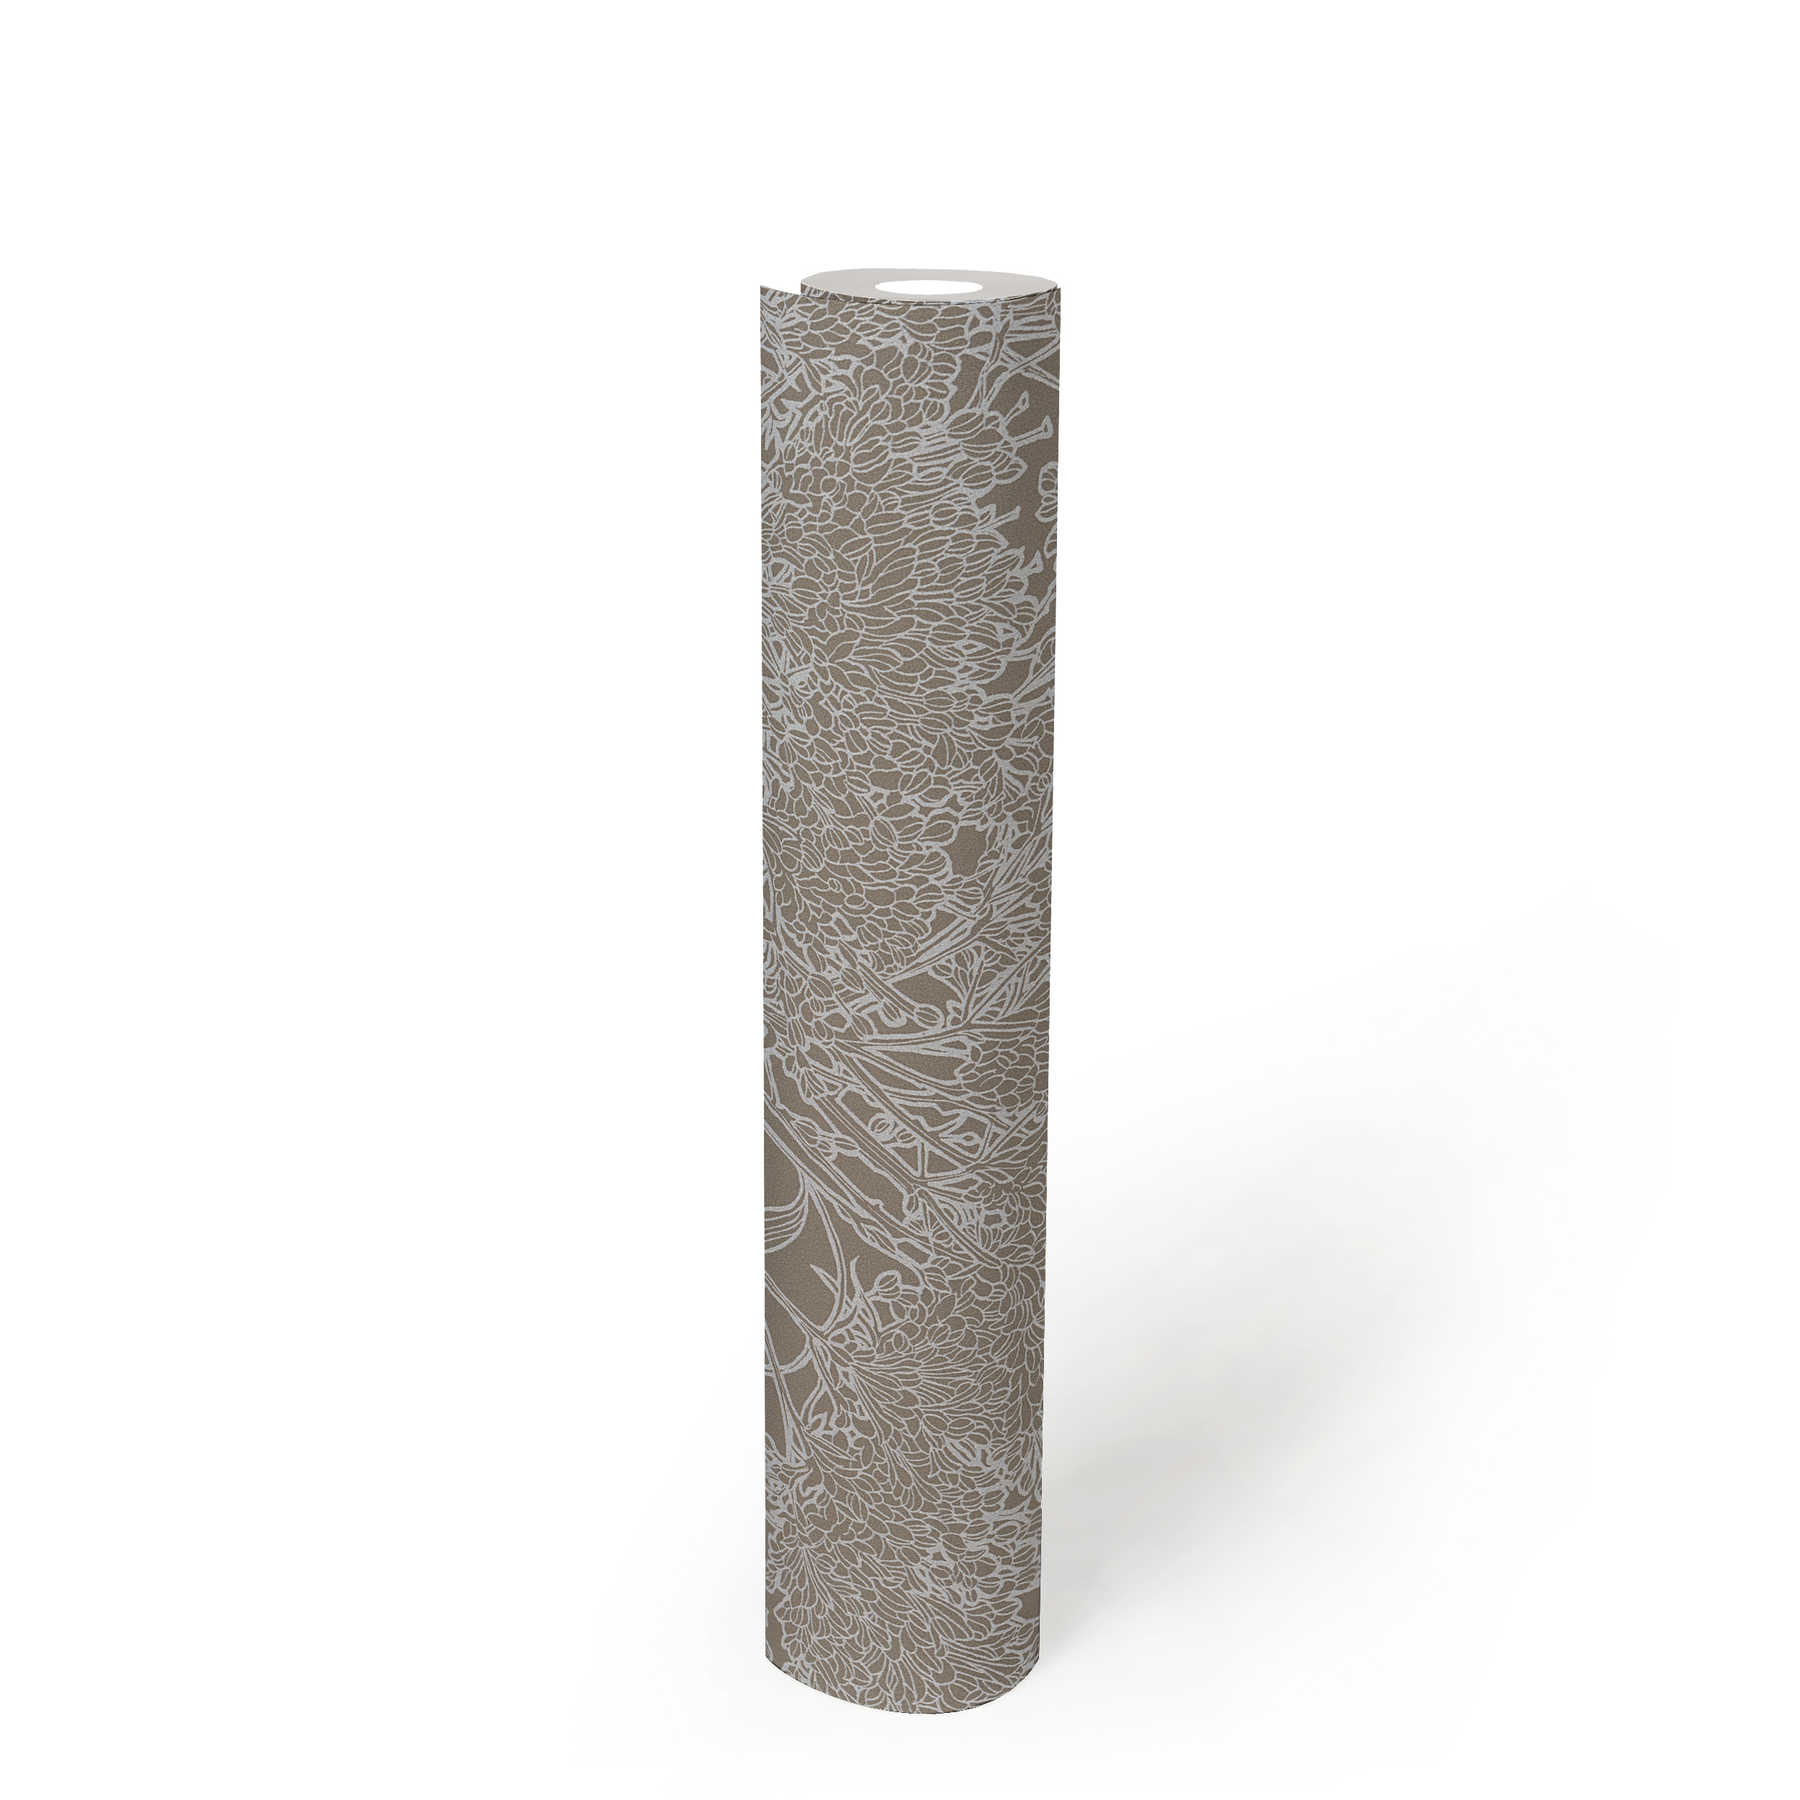             Papier peint fleuri gris avec effet métallisé argenté - gris, argenté
        